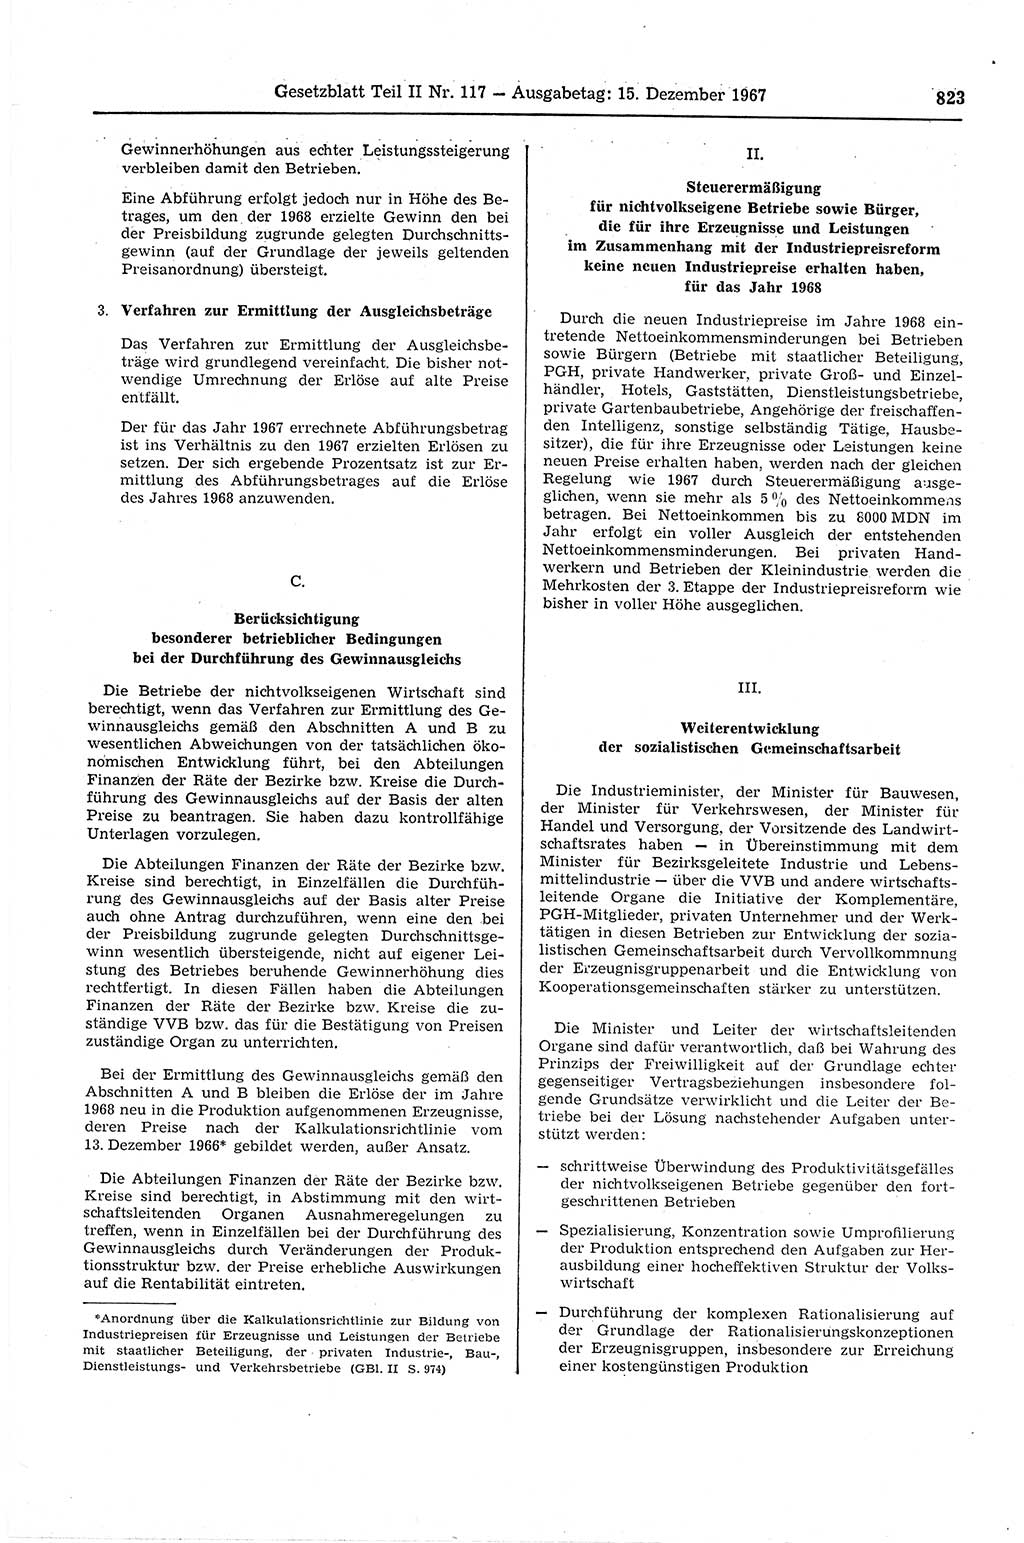 Gesetzblatt (GBl.) der Deutschen Demokratischen Republik (DDR) Teil ⅠⅠ 1967, Seite 823 (GBl. DDR ⅠⅠ 1967, S. 823)